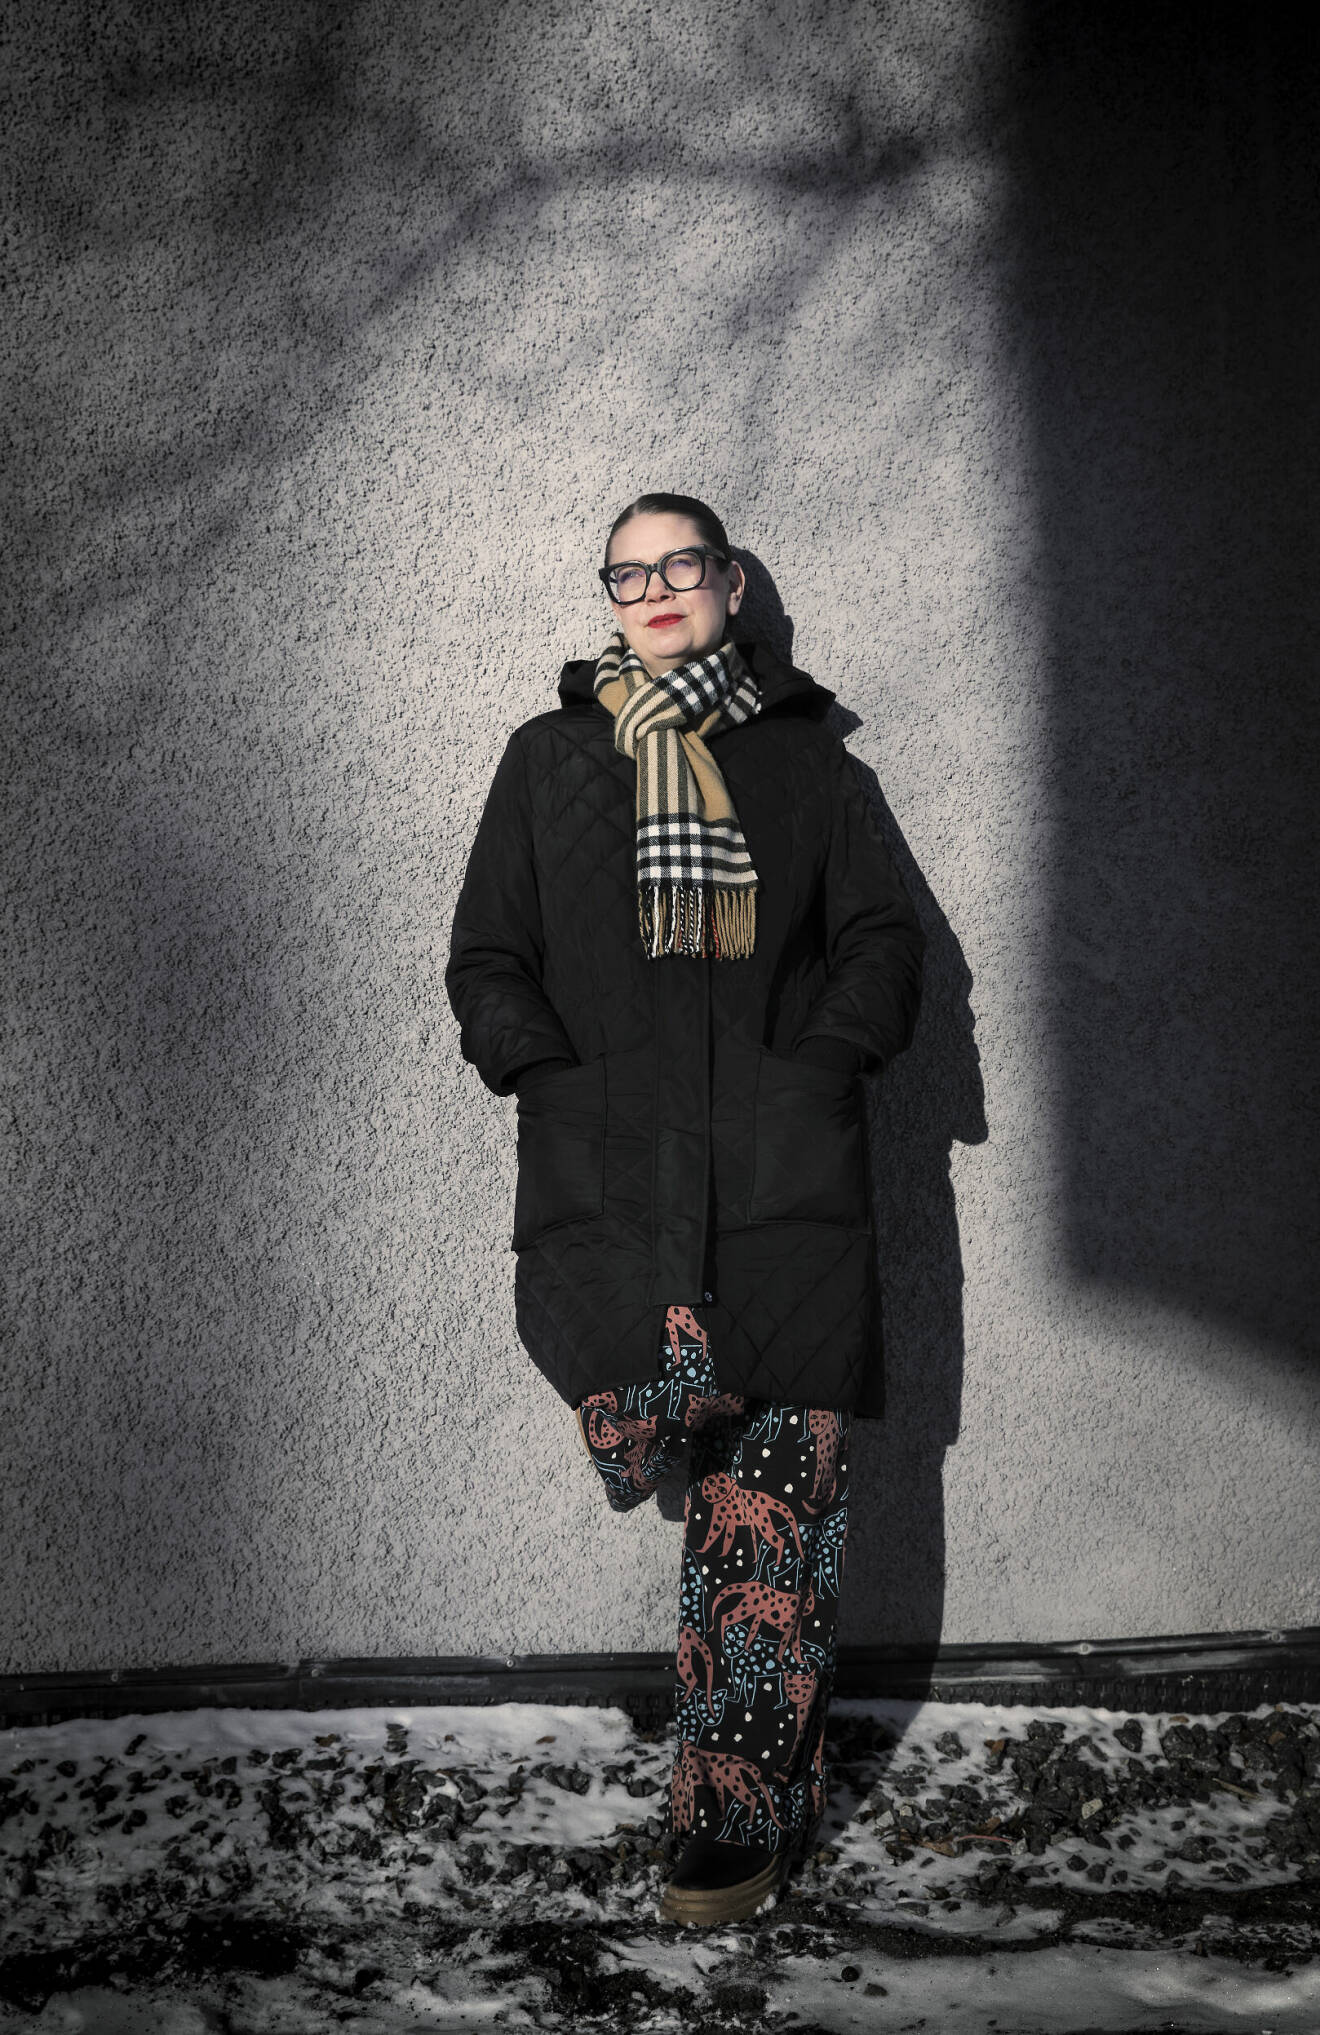 Maria Lundberg, som växte upp som maskrosbarn och utsattes för övergrepp som barn, fotograferad utomhus i Stockholm.